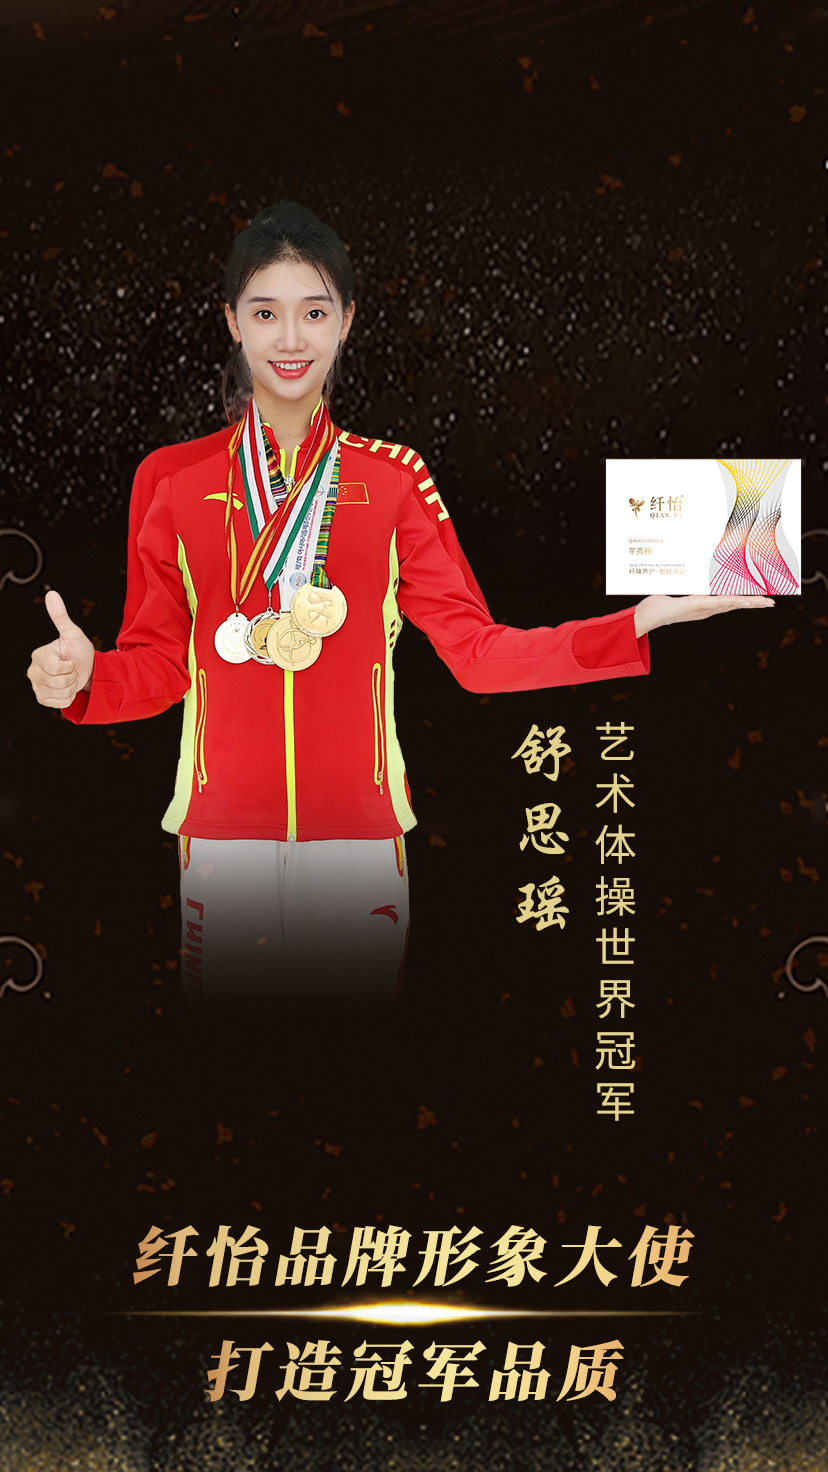 艺术体操世界冠军舒思瑶签约纤怡品牌